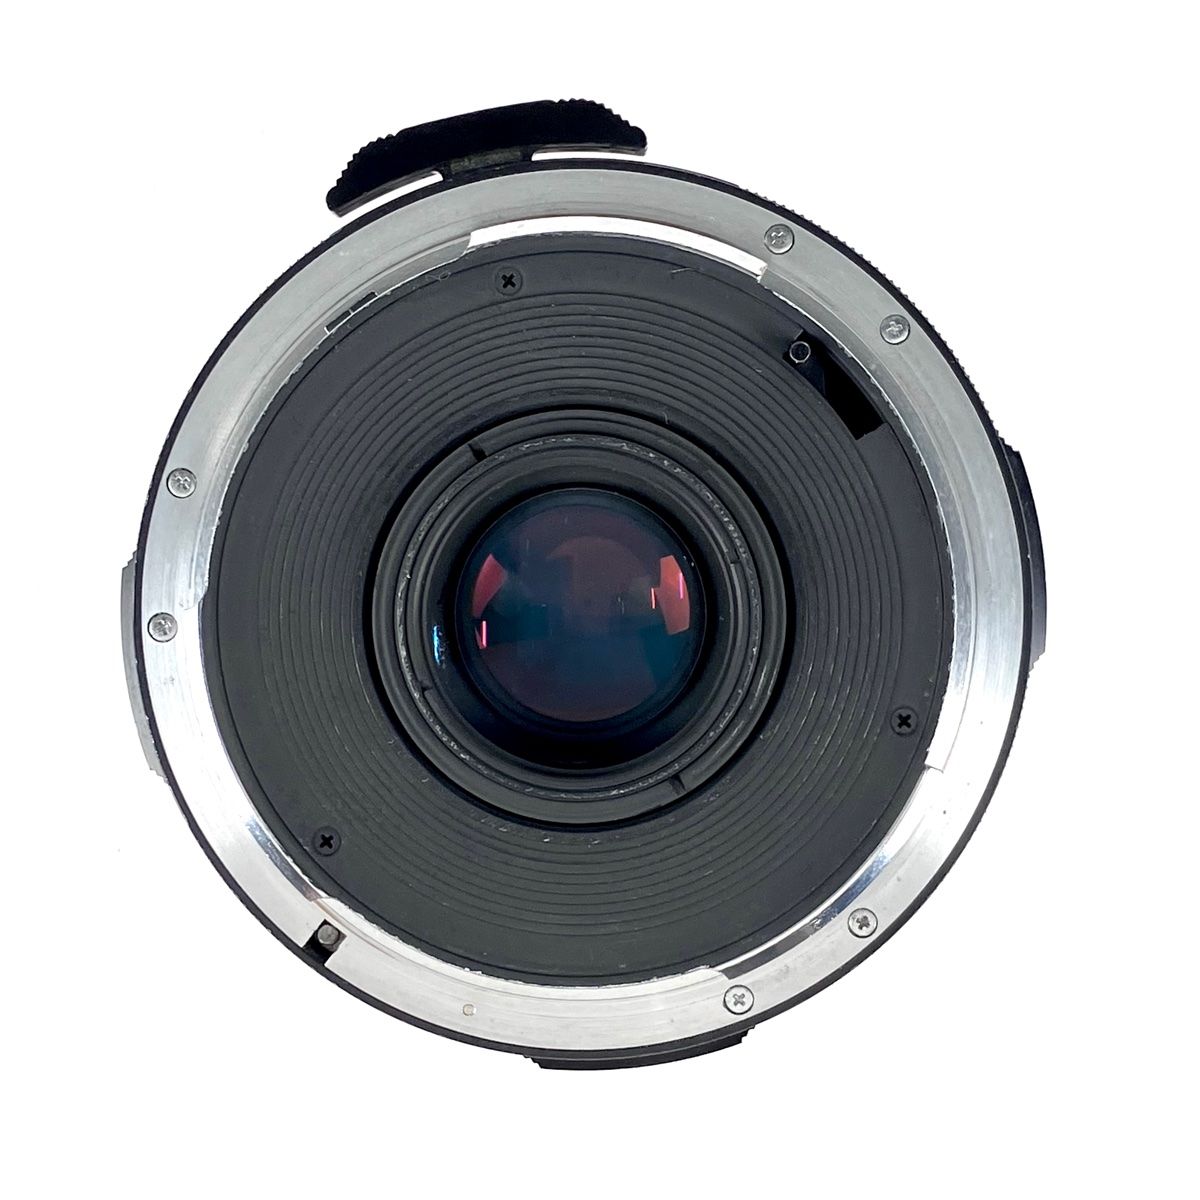 ペンタックス SMC 6X7 55mm F4 67 バケペン用 - カメラ